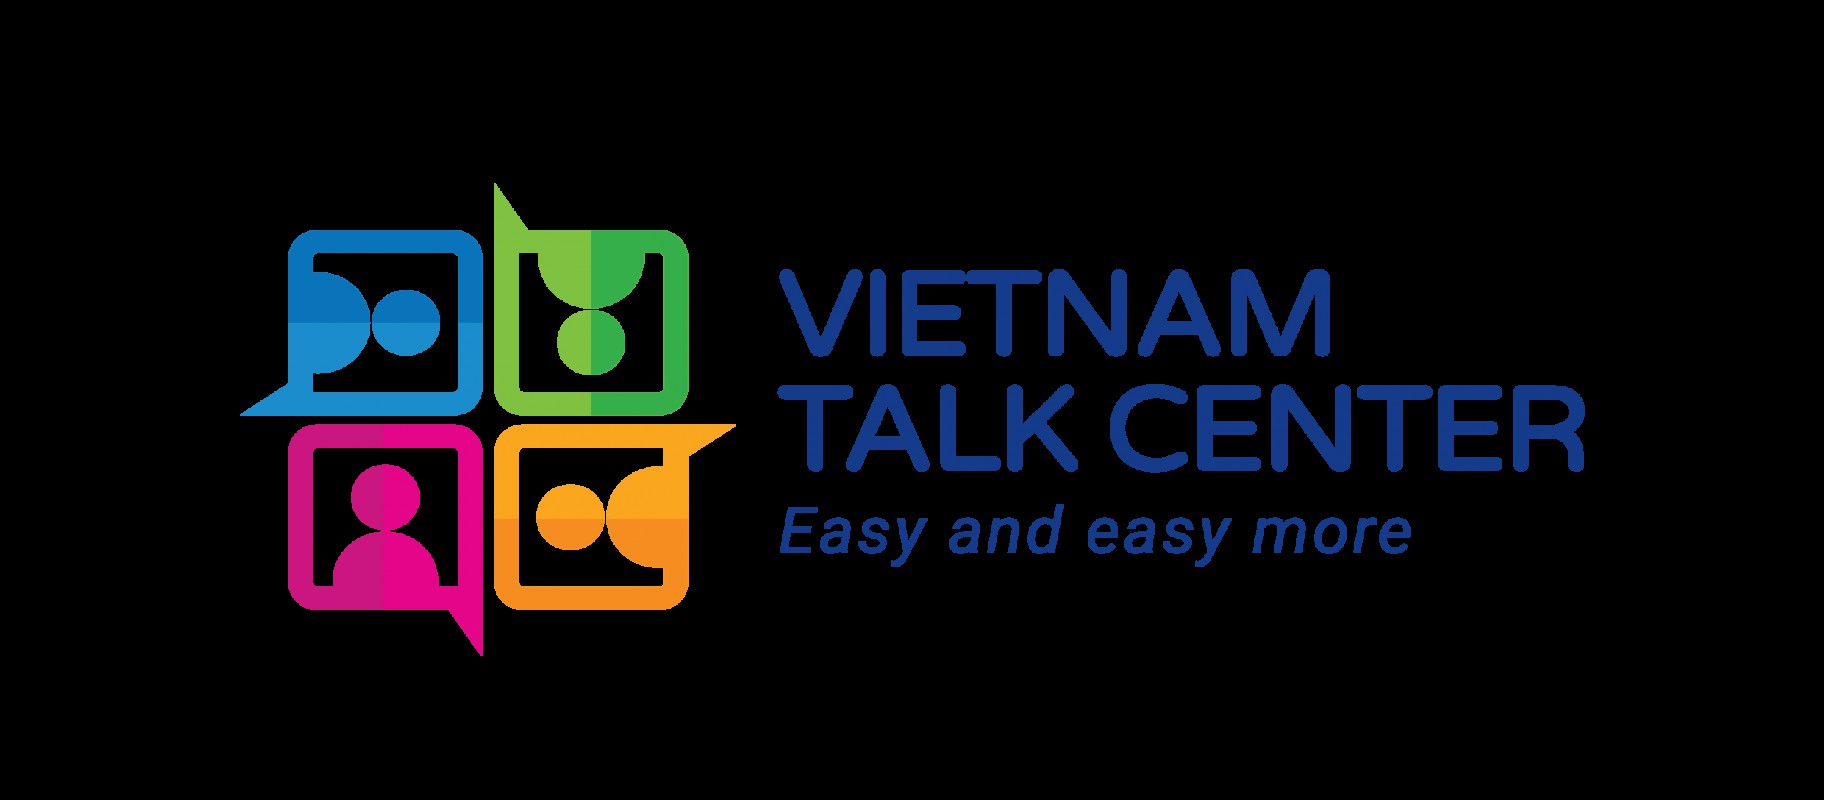 Ra mắt trung tâm tiếng Anh online Vietnam Talk Center